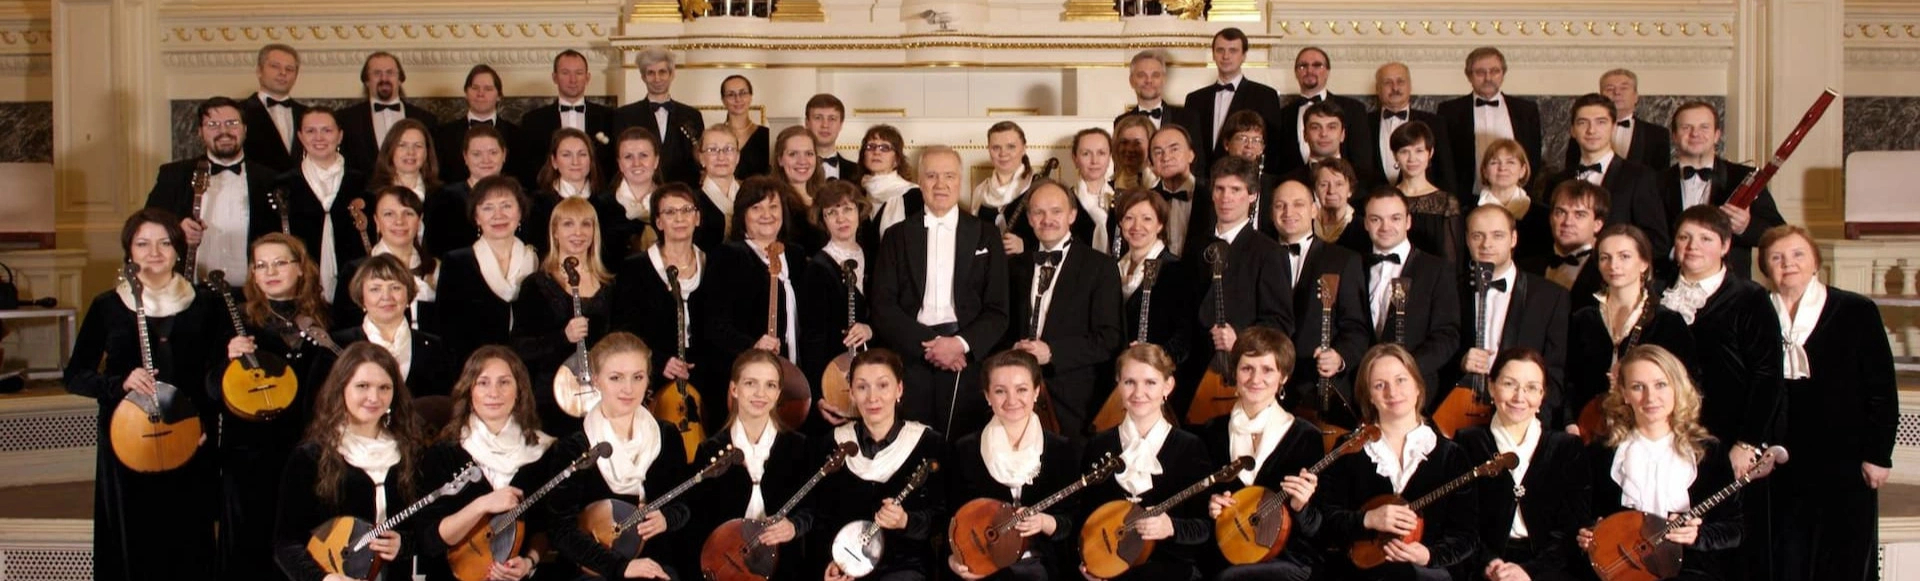 Государственный академический русский оркестр имени В.В.Андреева